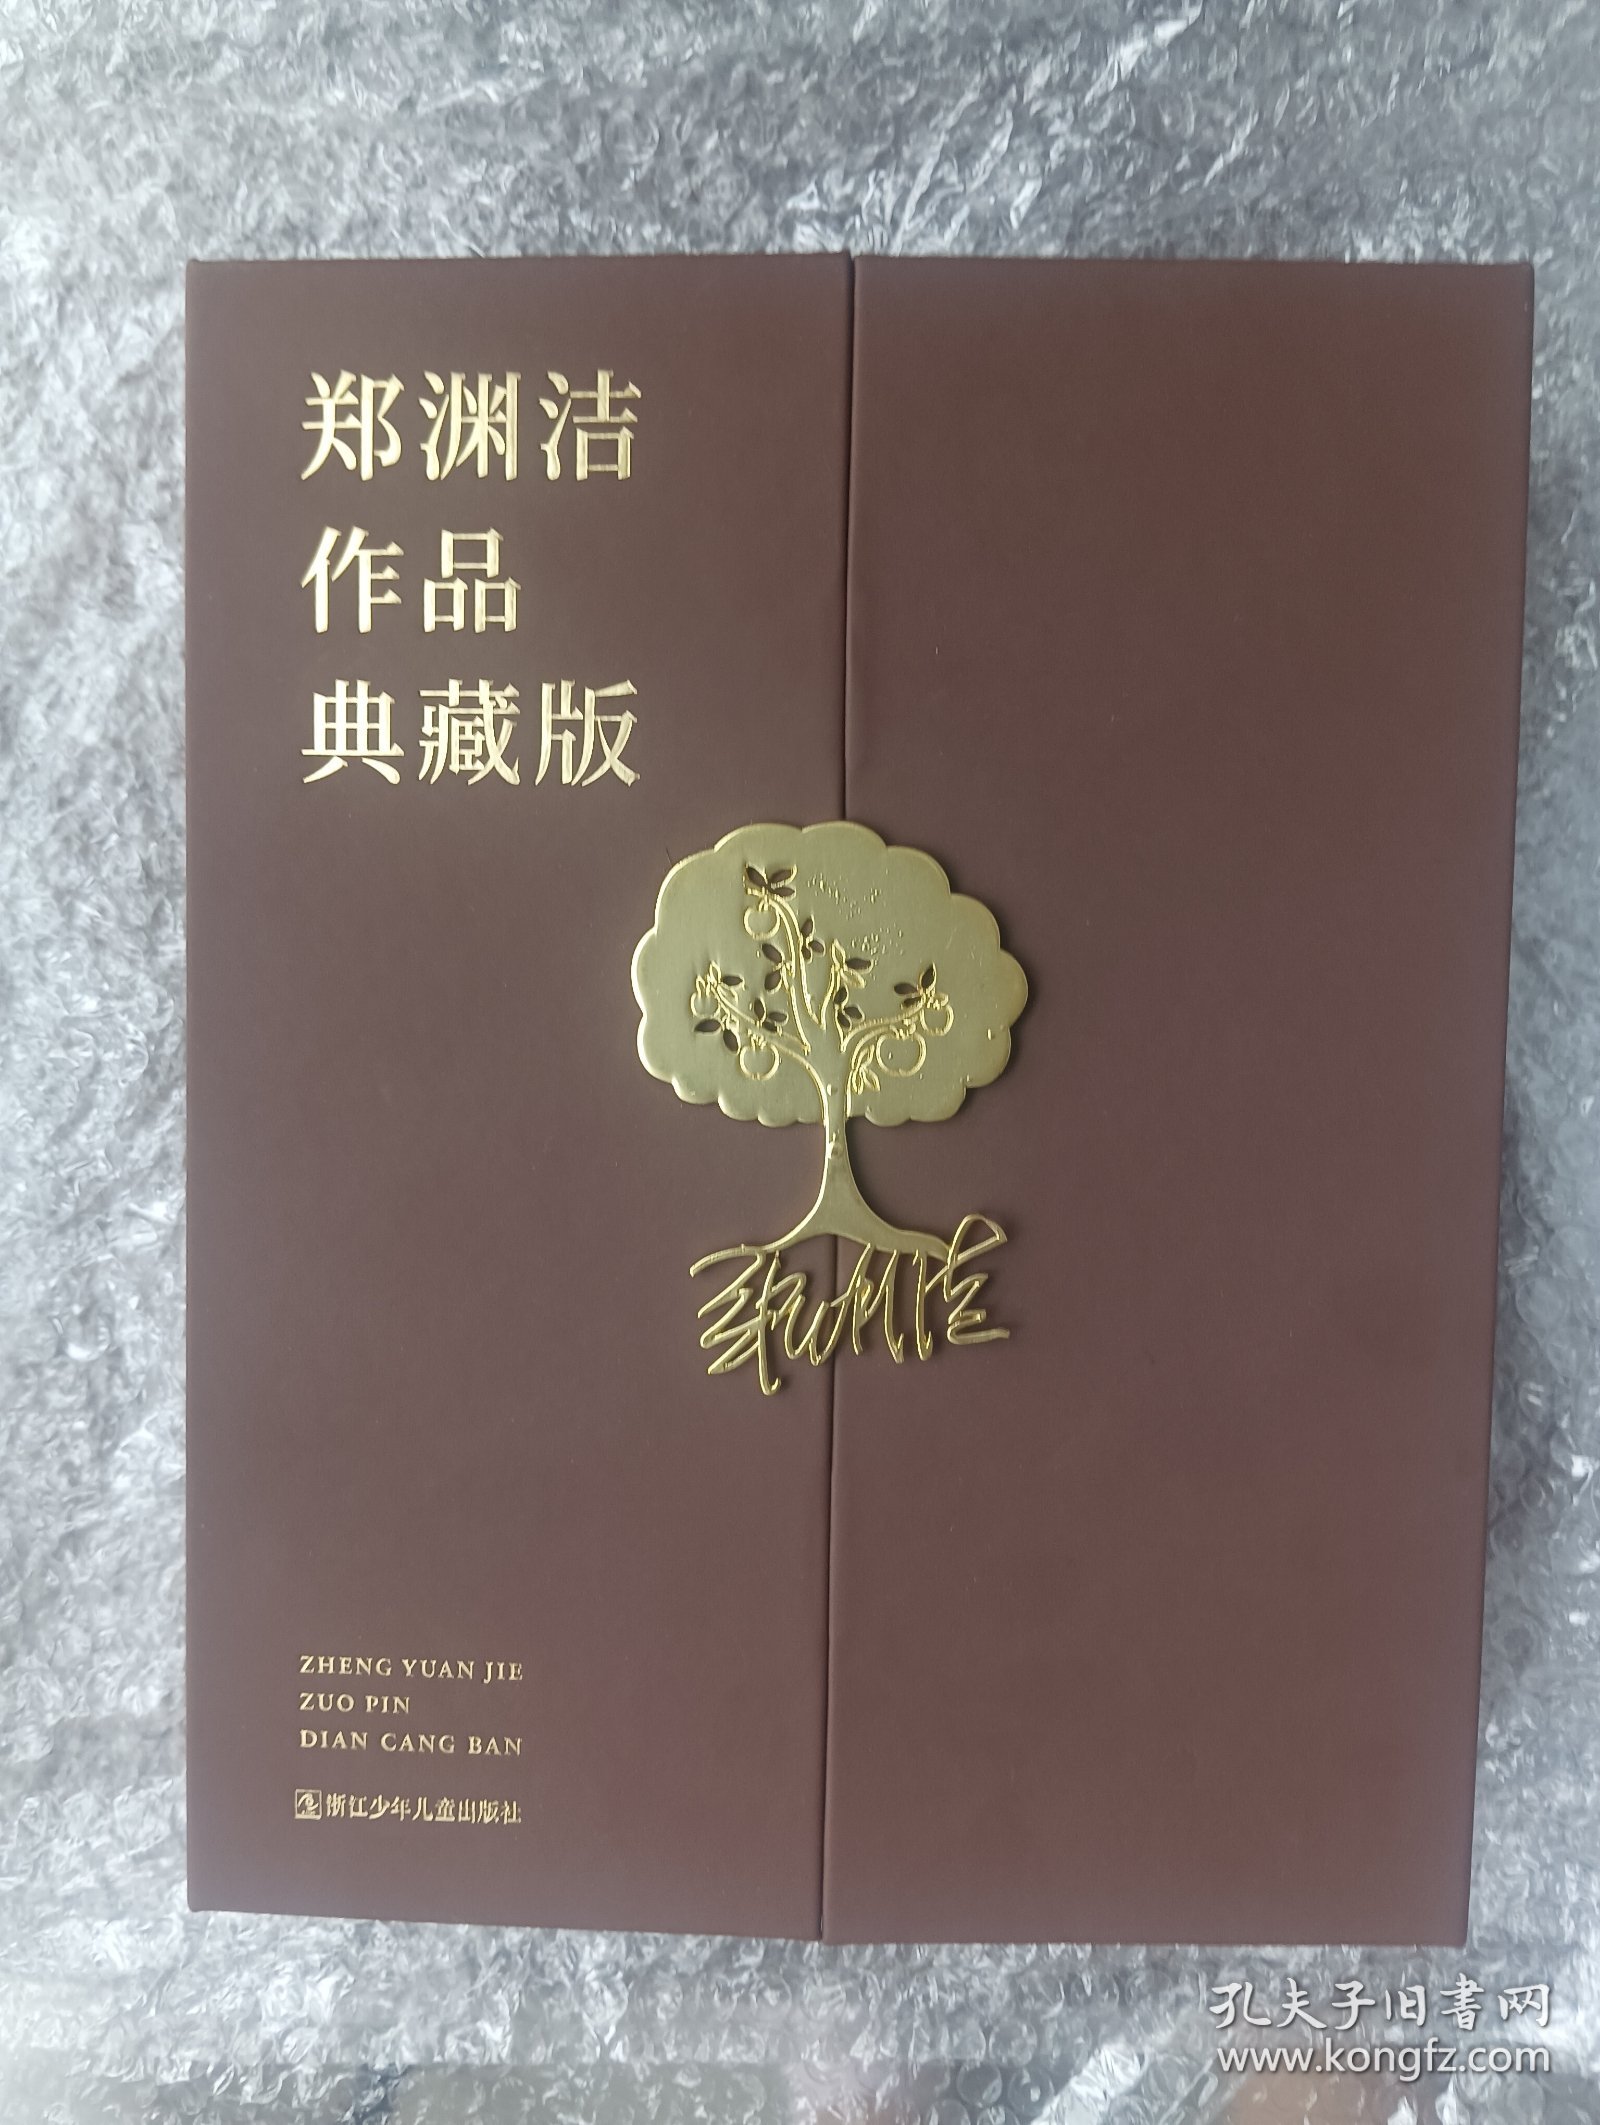 郑渊洁作品典藏版 限量发行，总发行量仅615册 作者亲笔签名 每册单独编号，有收藏价值。